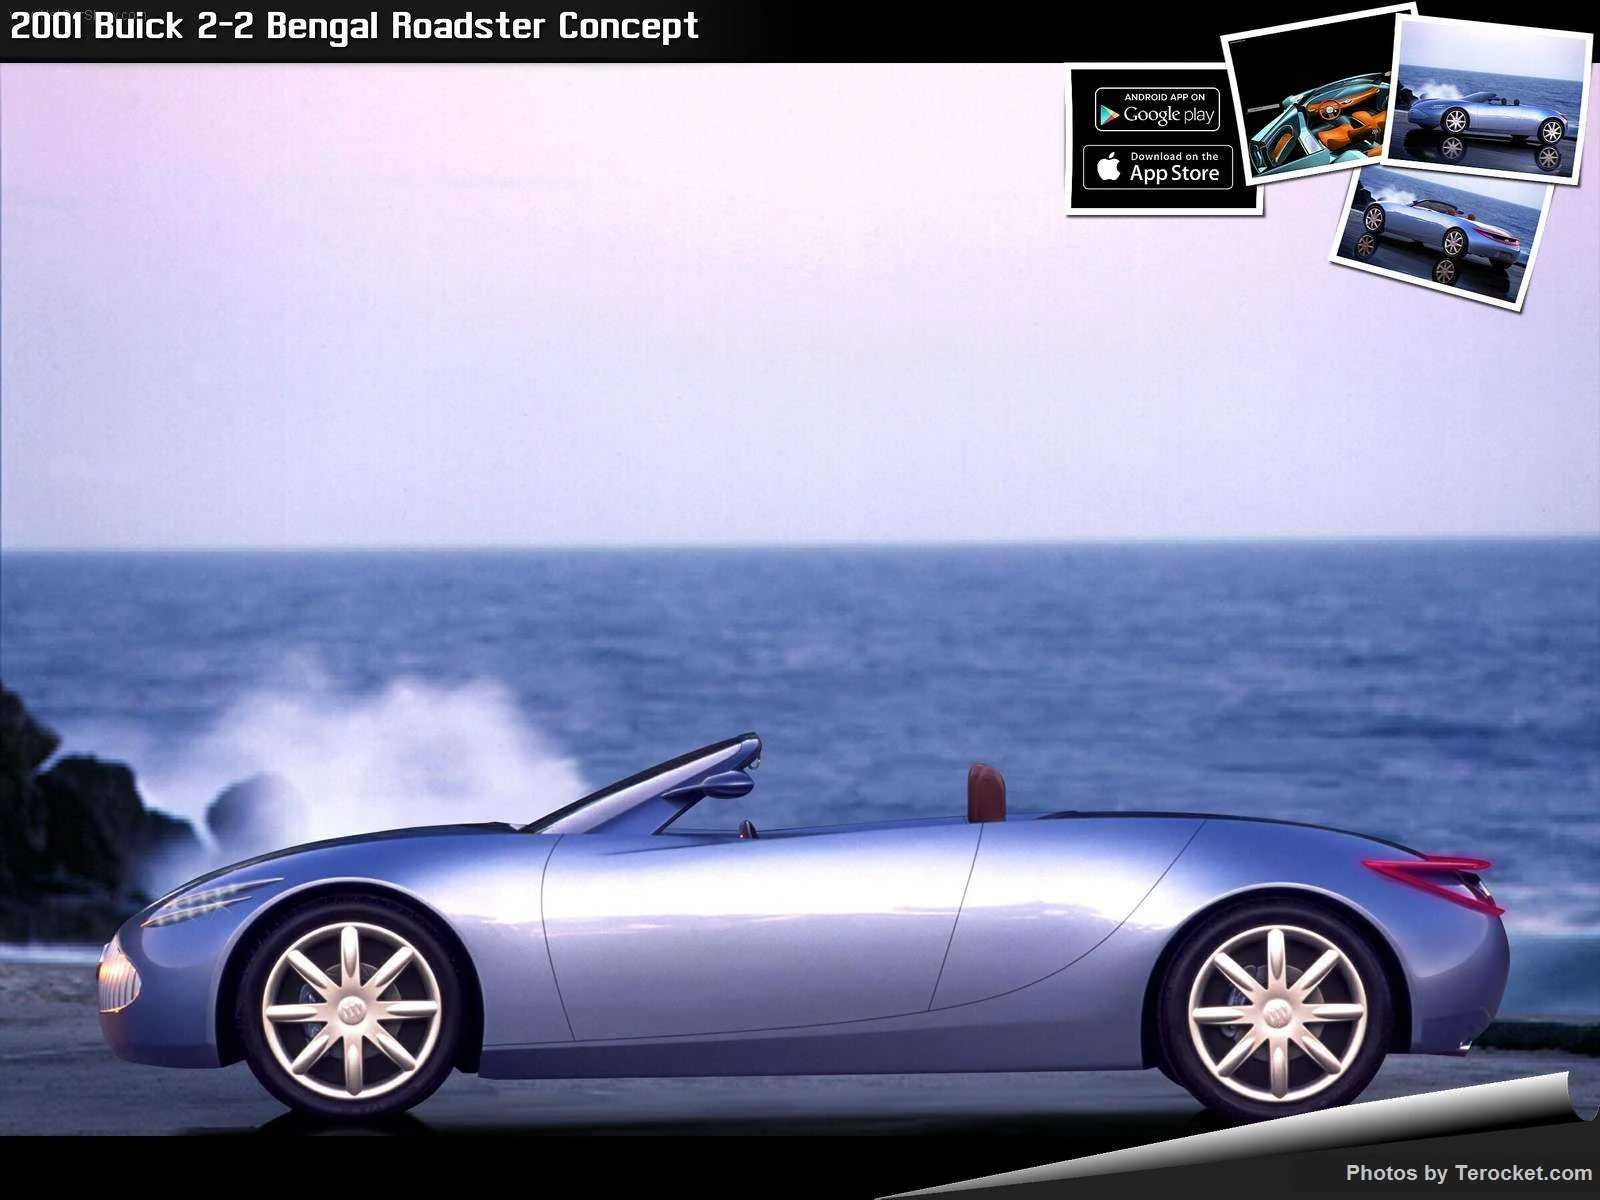 Hình ảnh xe ô tô Buick 2-2 Bengal Roadster Concept 2001 & nội ngoại thất